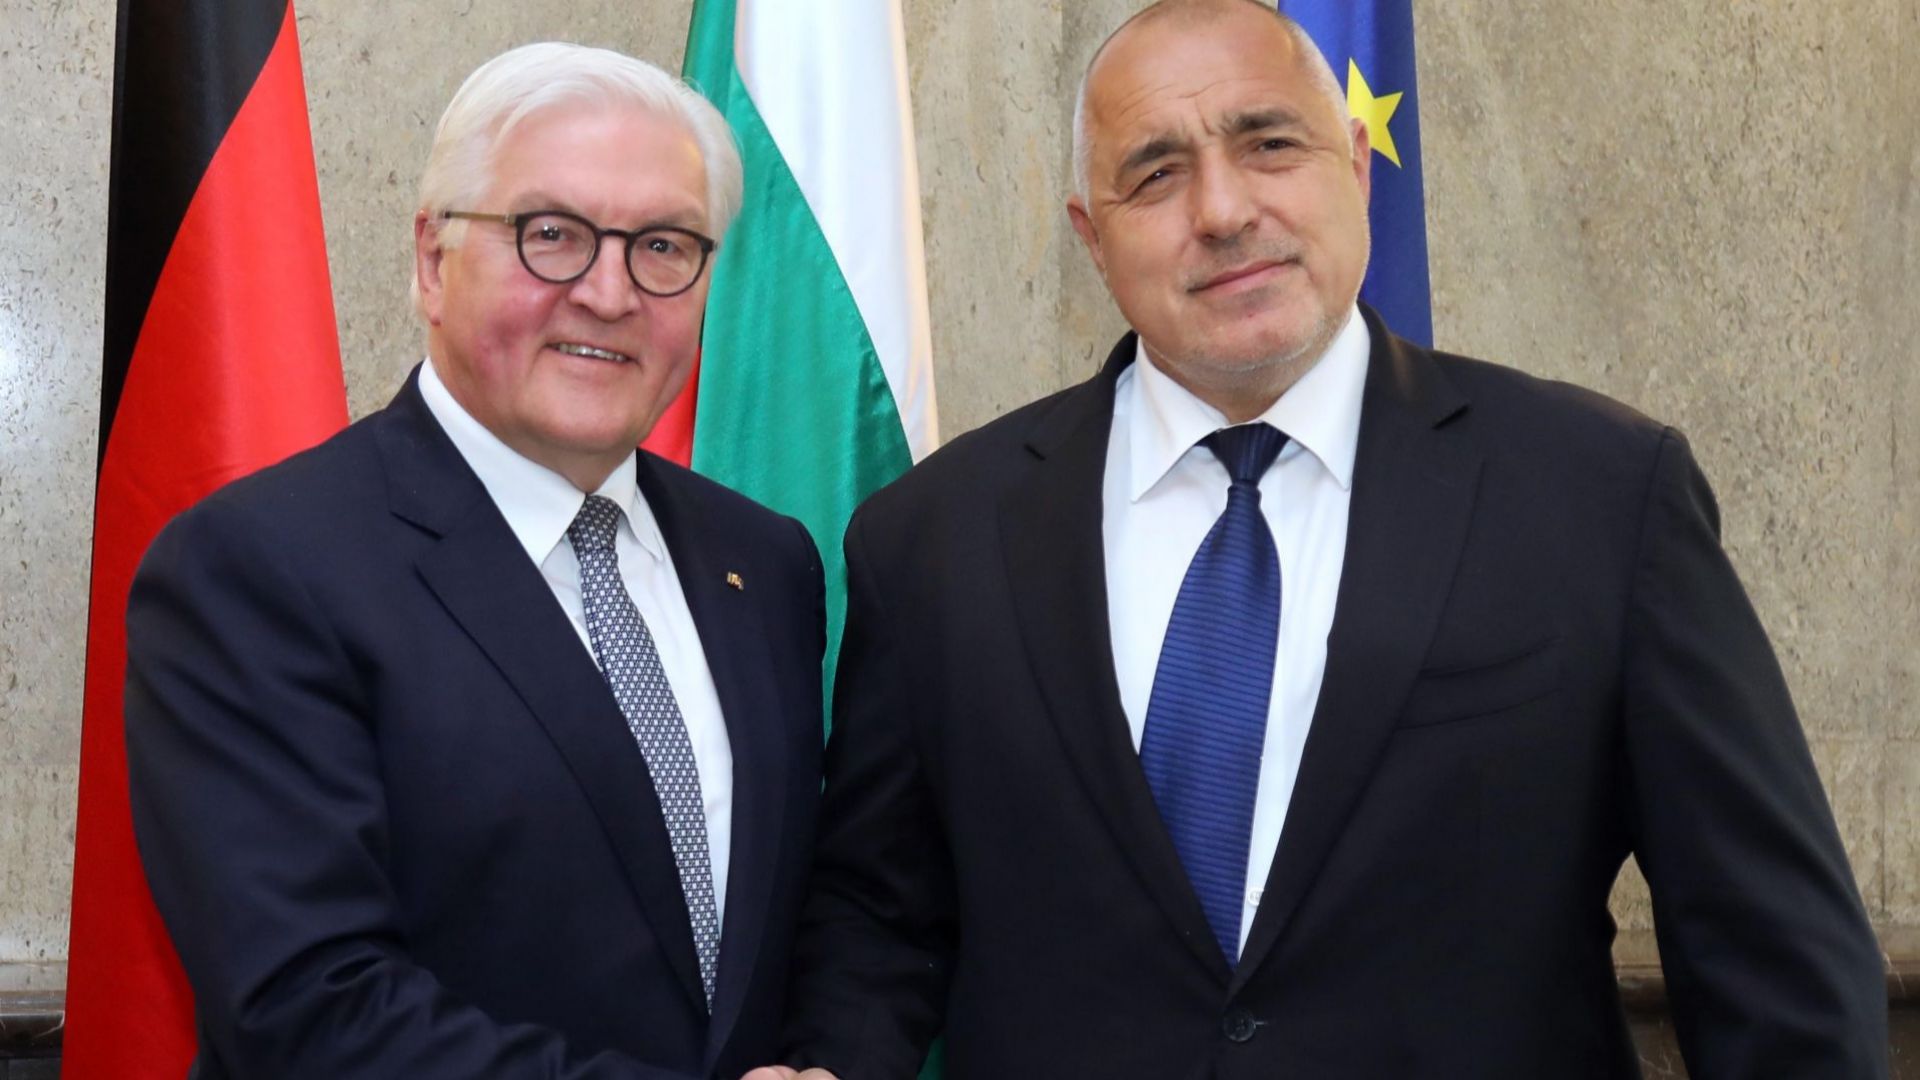 Търговско икономическите отношения между България и Германия както и въпроси от